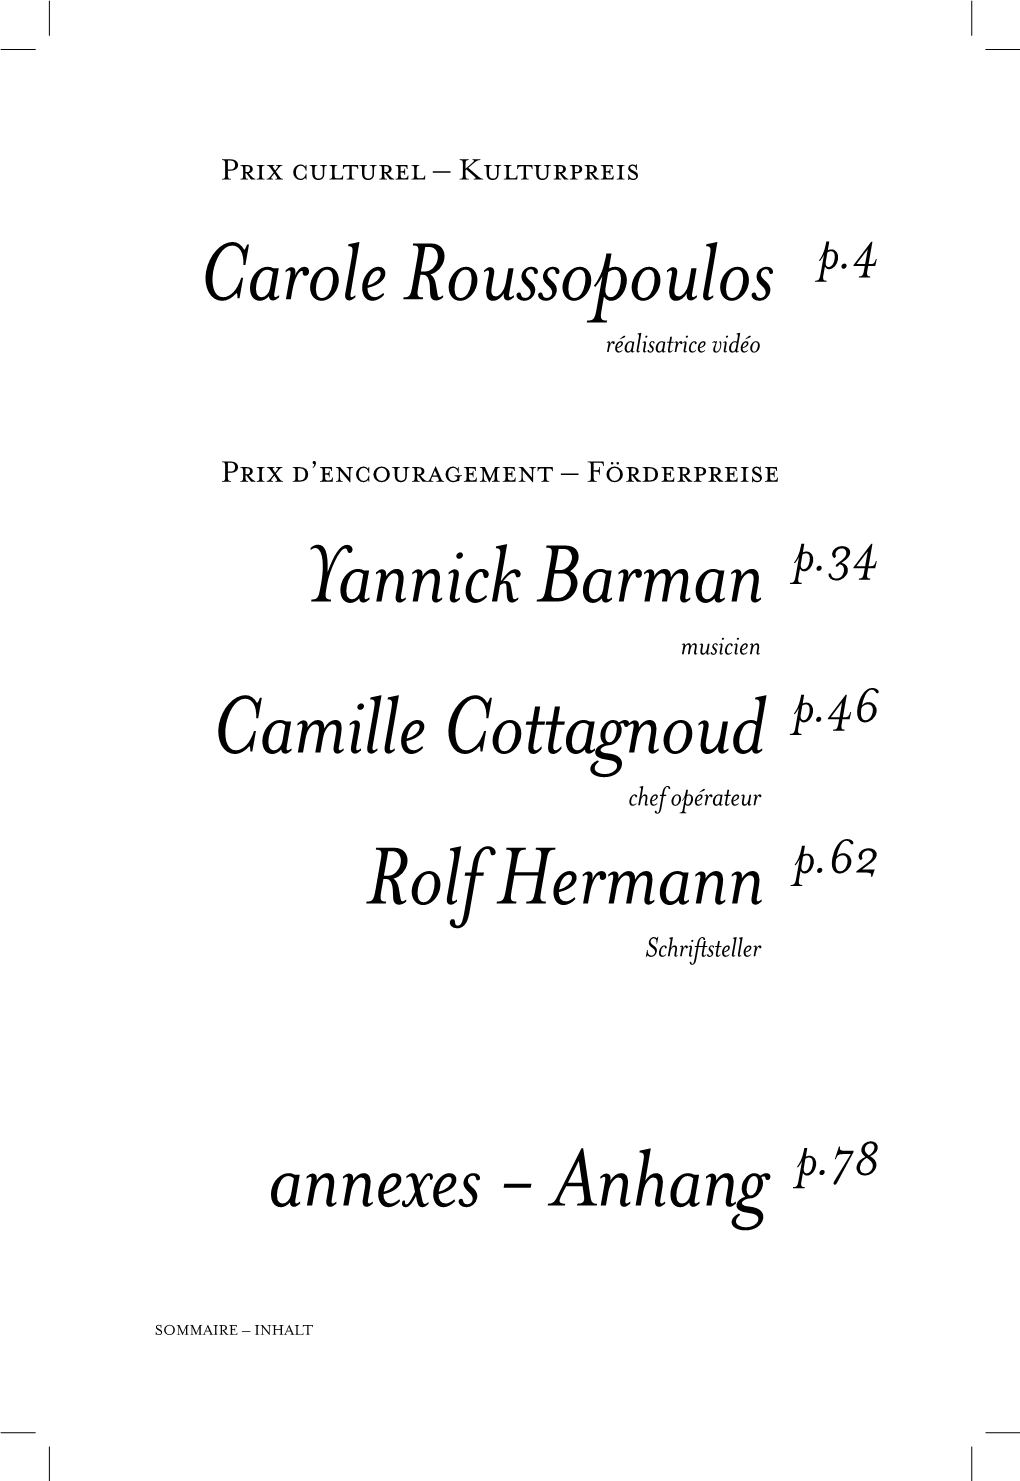 Carole Roussopoulos P.4 Yannick Barman P.34 Camille Cottagnoud P